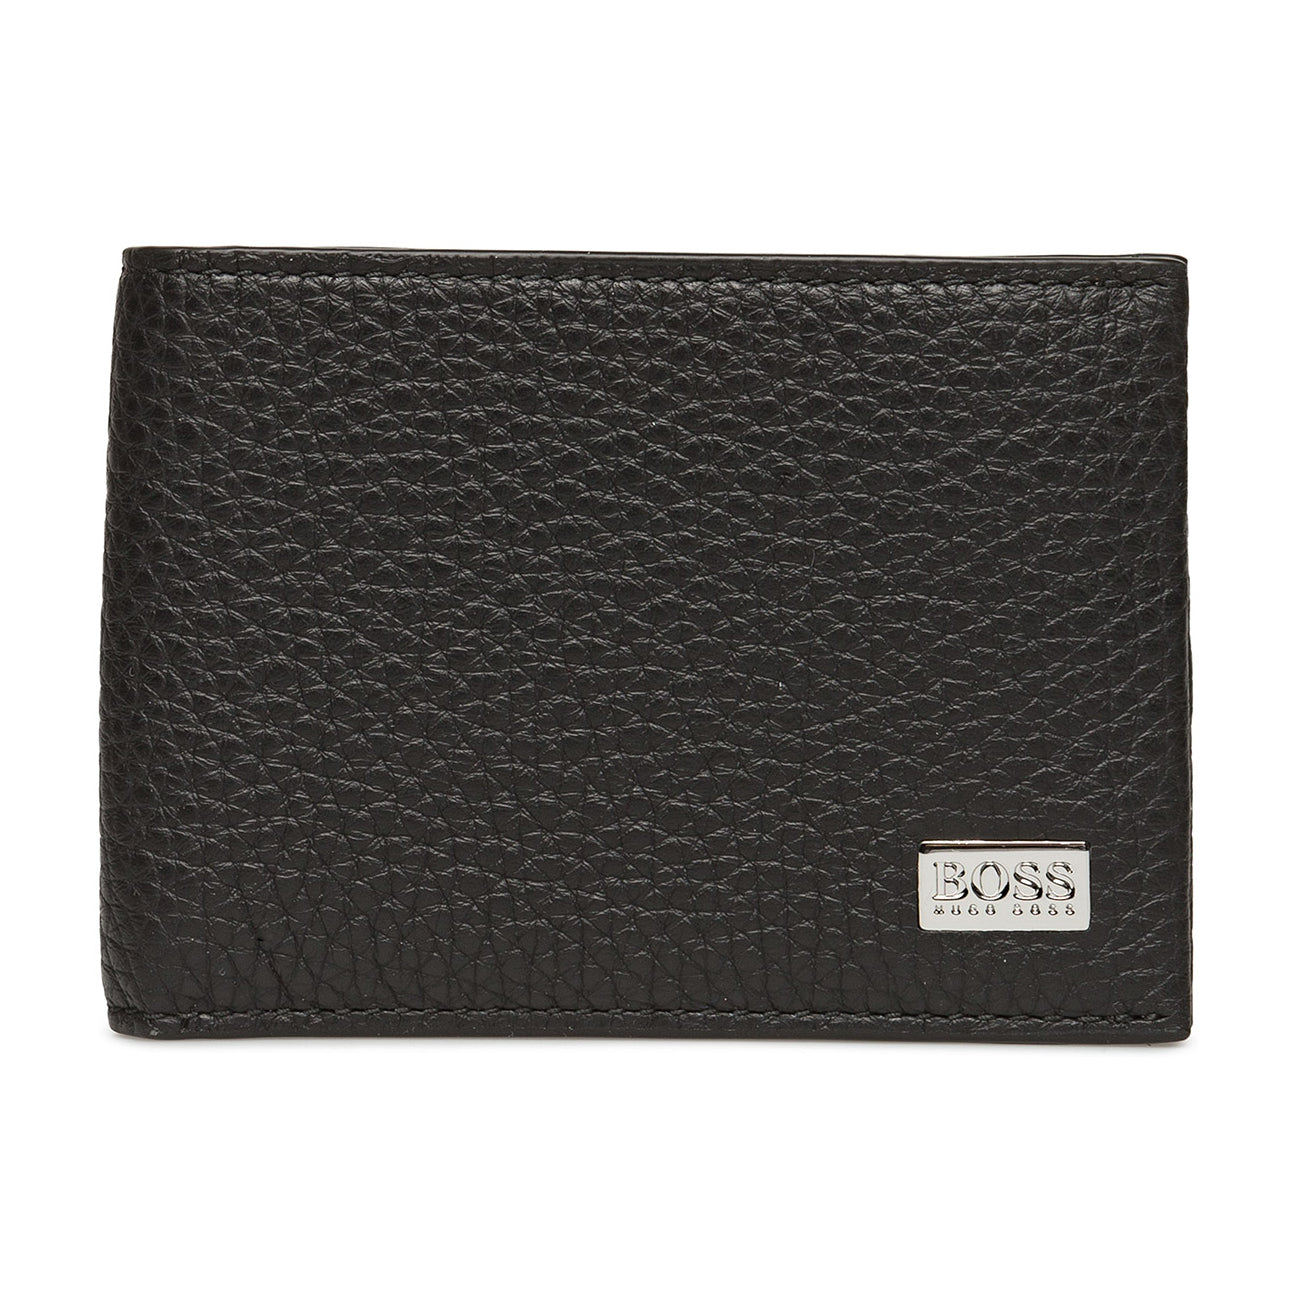 Boss Hugo Boss Crosstown 6cc Wallet Leather Black